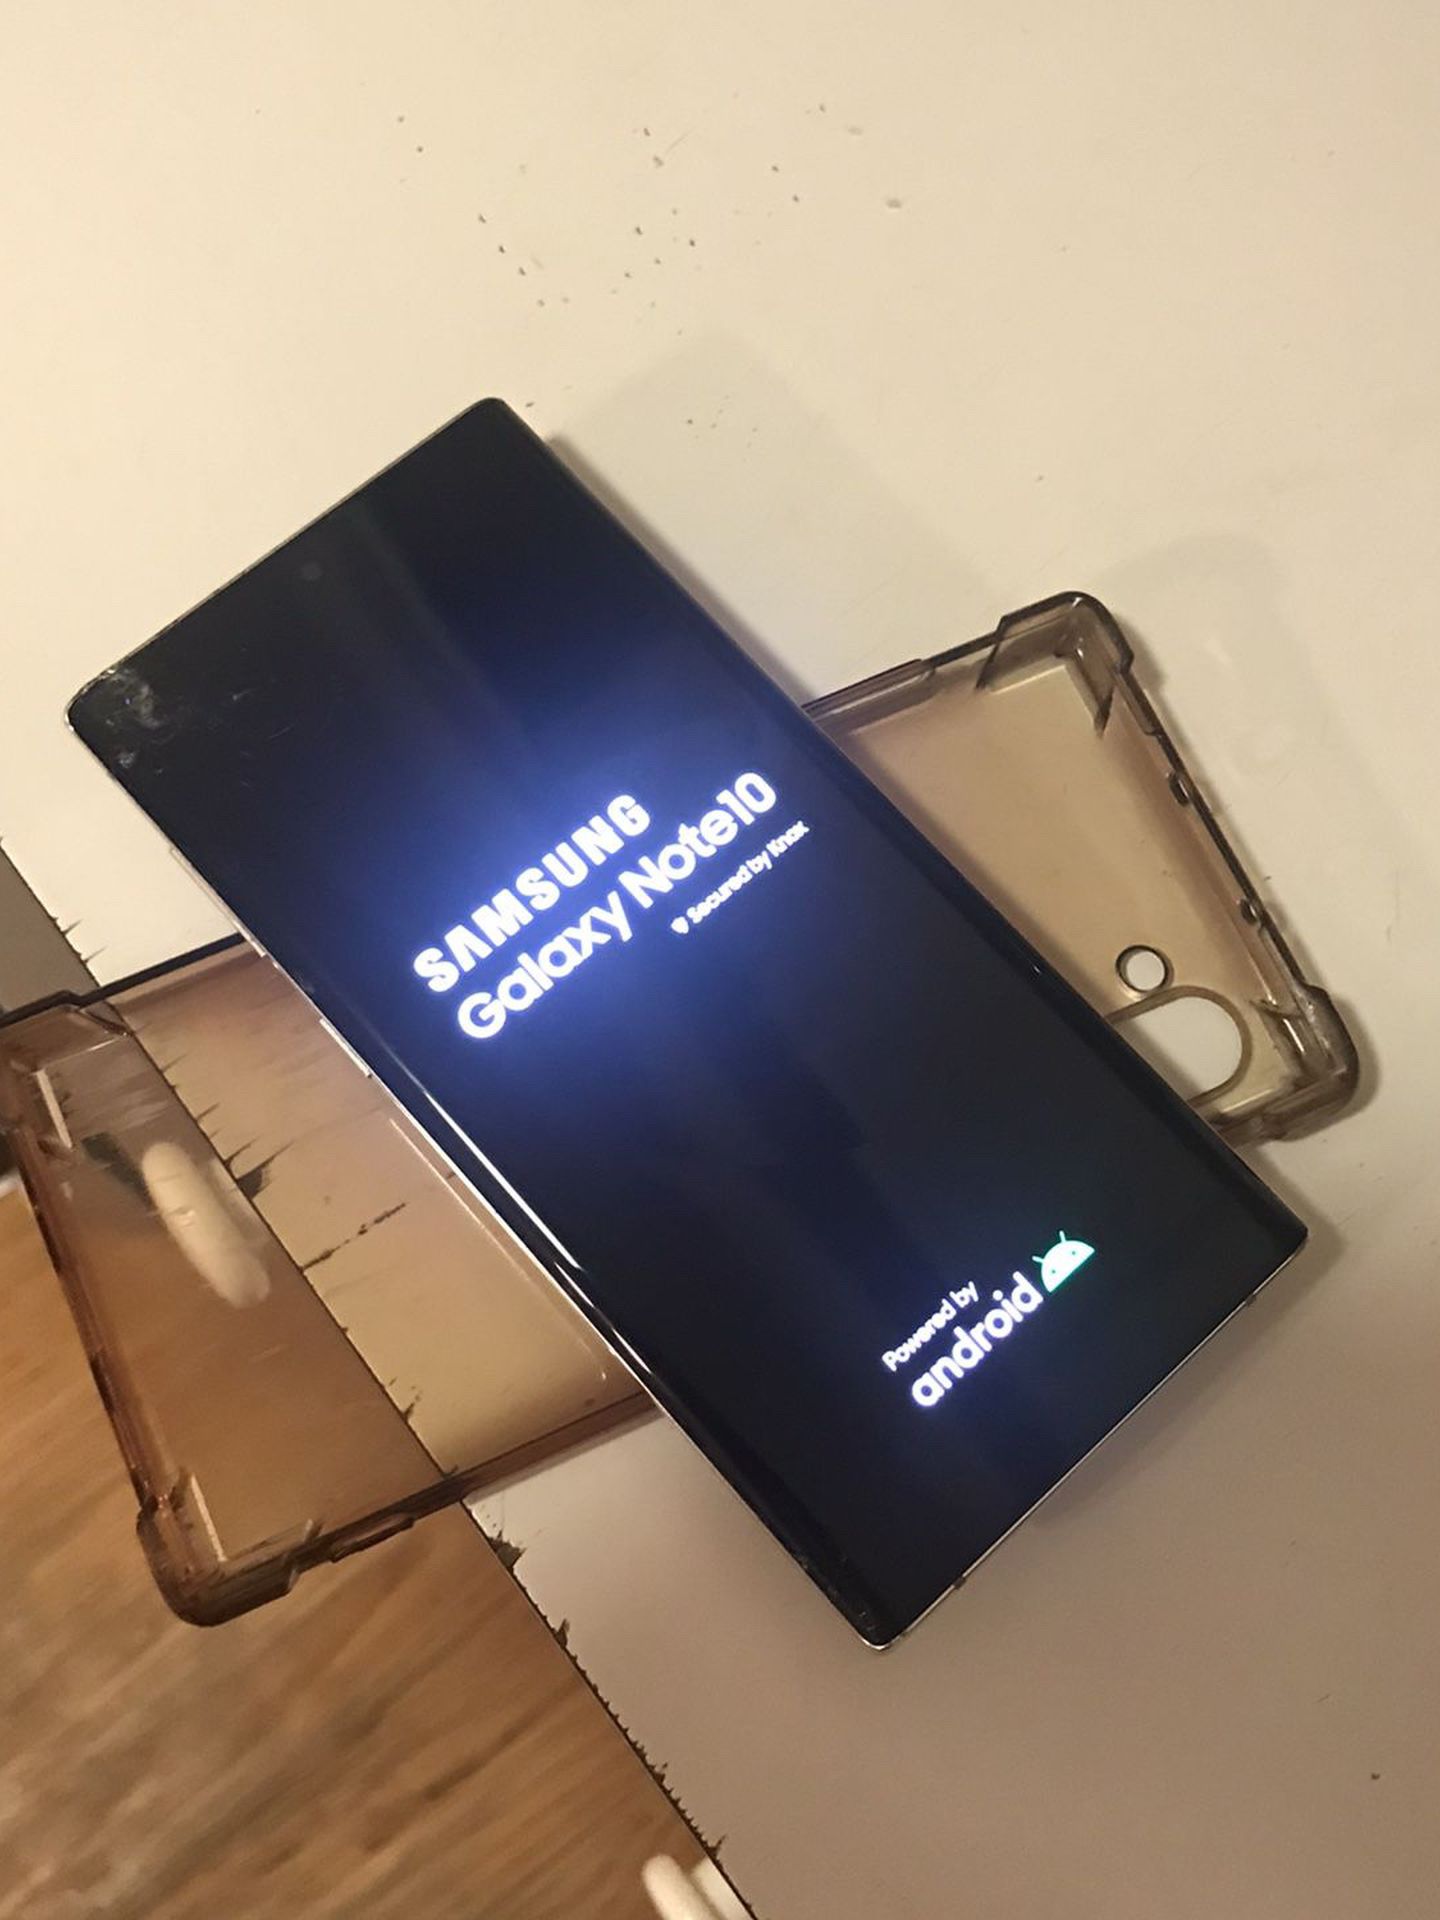 Samsung Galaxy Note 10 Para Partes Locked Google Cuenta Poco Que Brado Ver Las Fotos